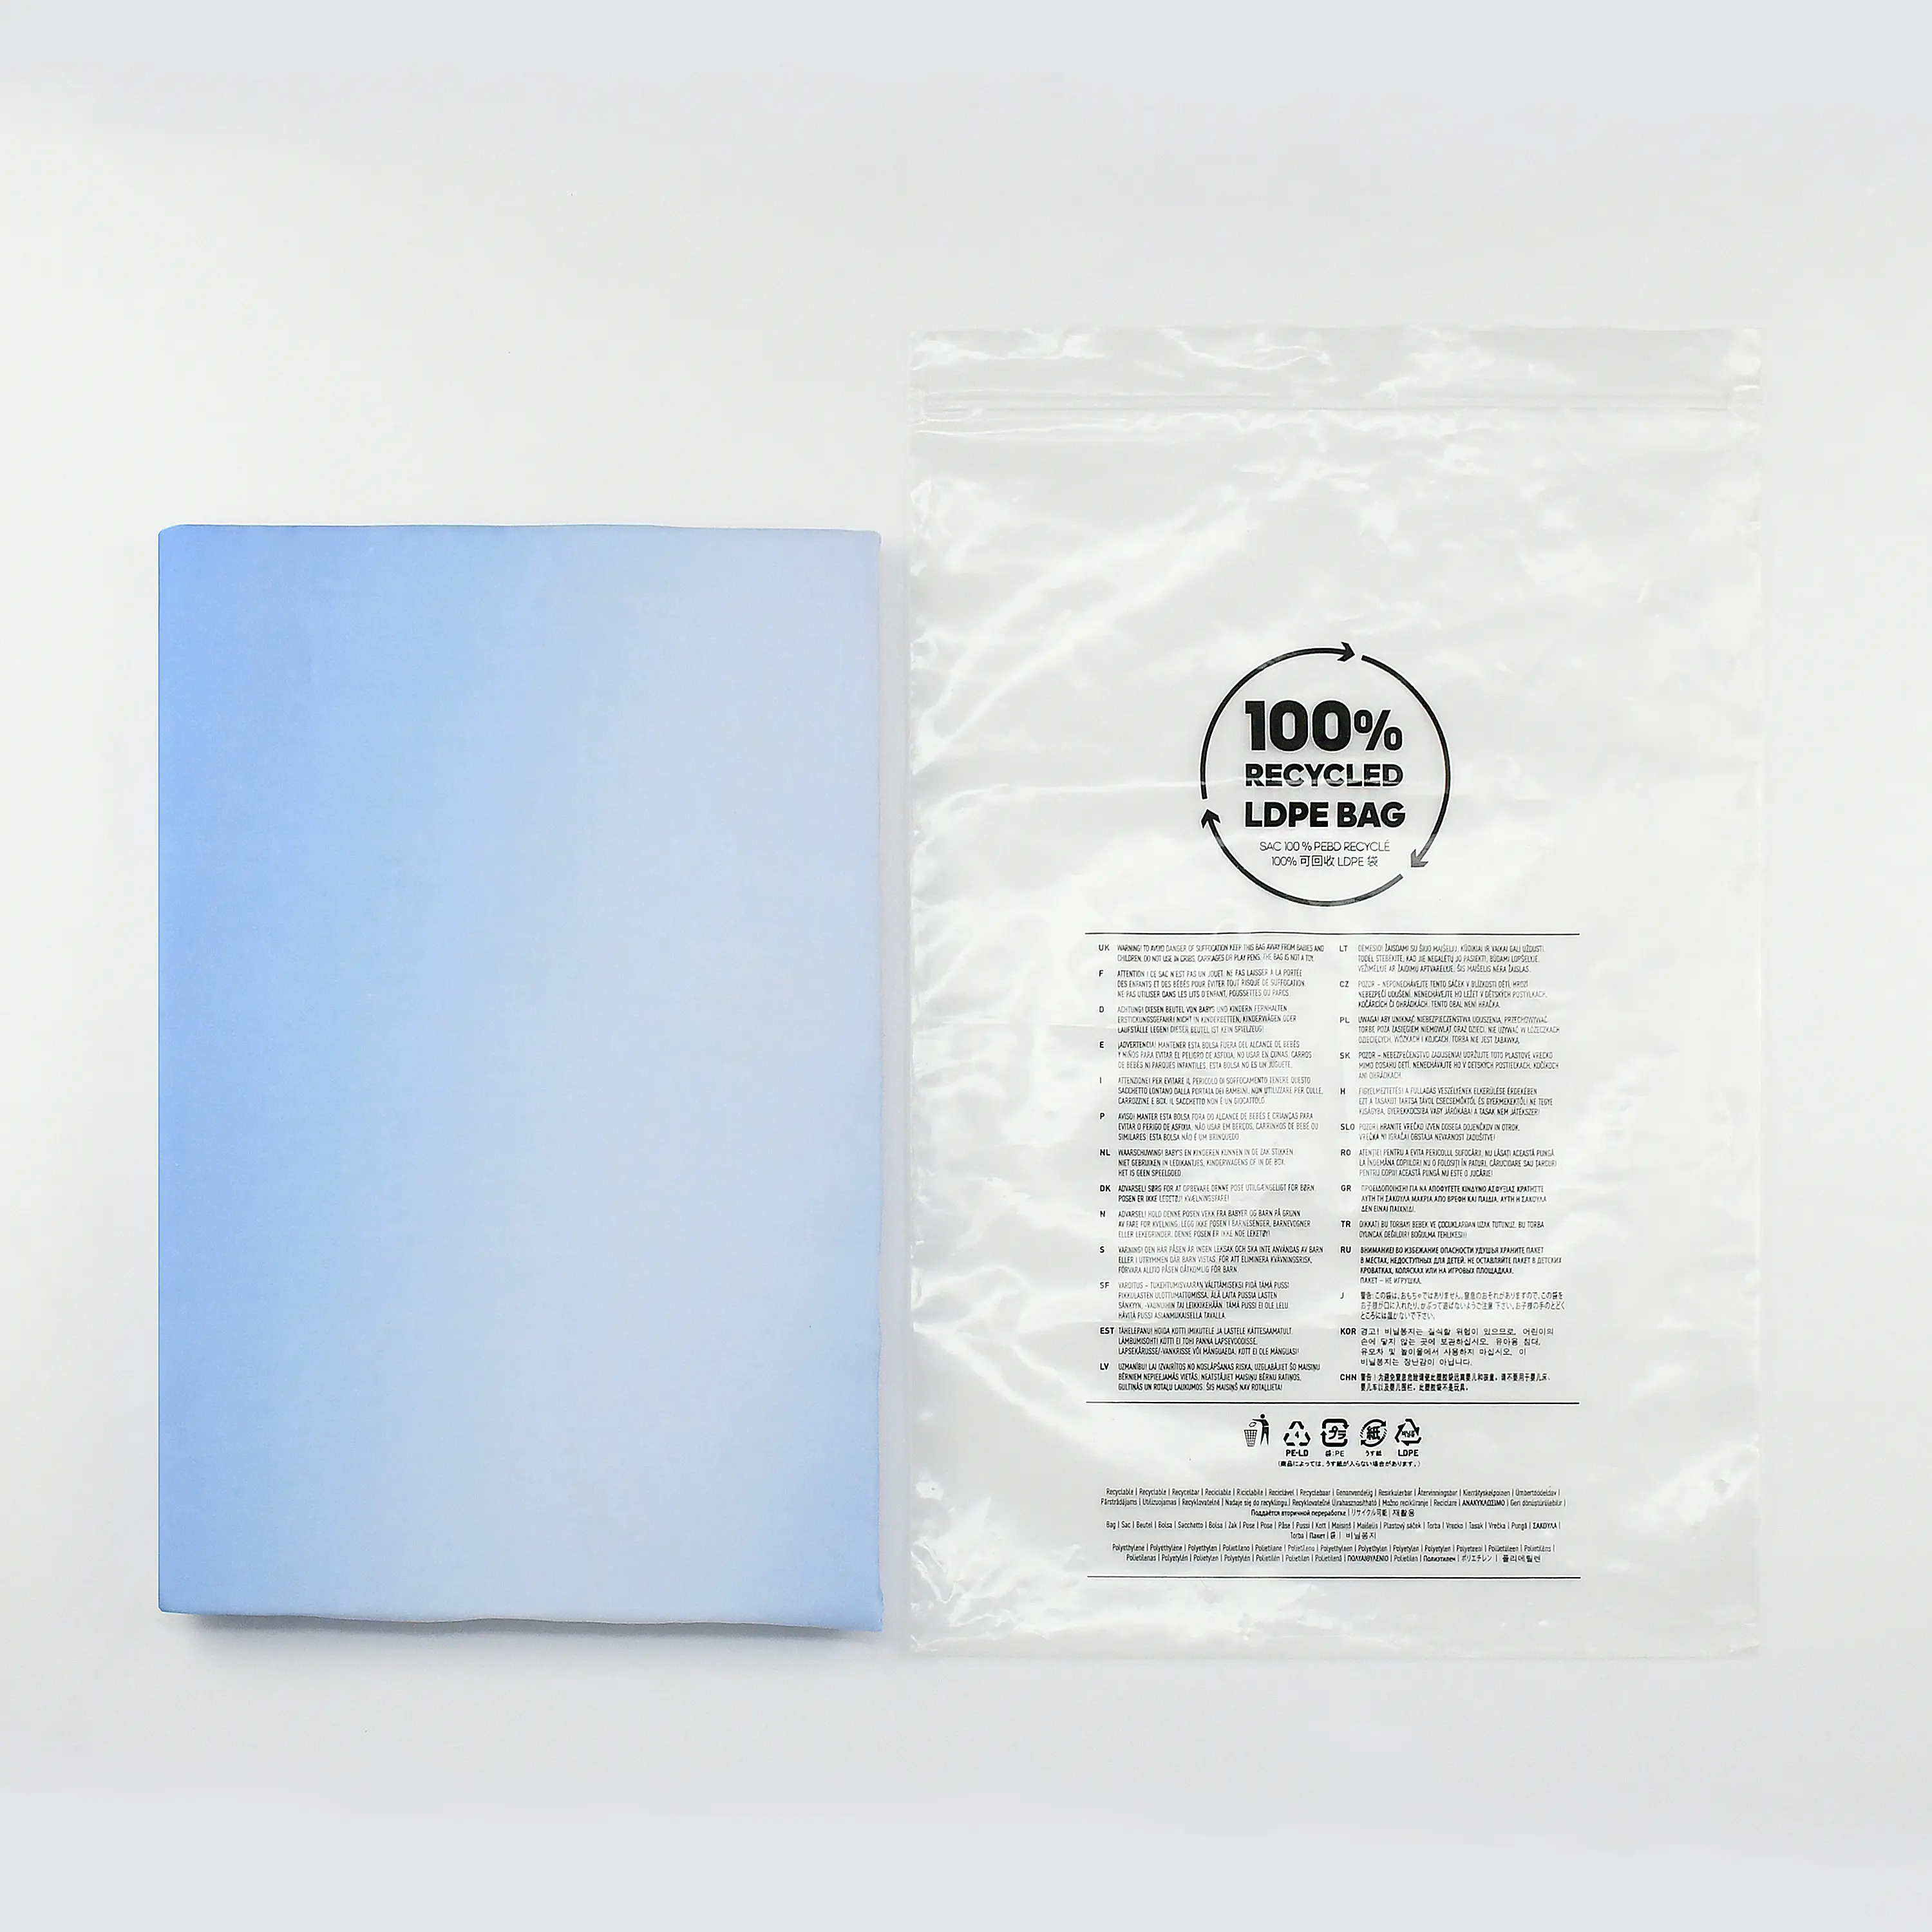 カスタムバッグリサイクルgrs認定透明印刷ビニール袋リサイクル可能ジップバッグ衣類用ロゴ付き